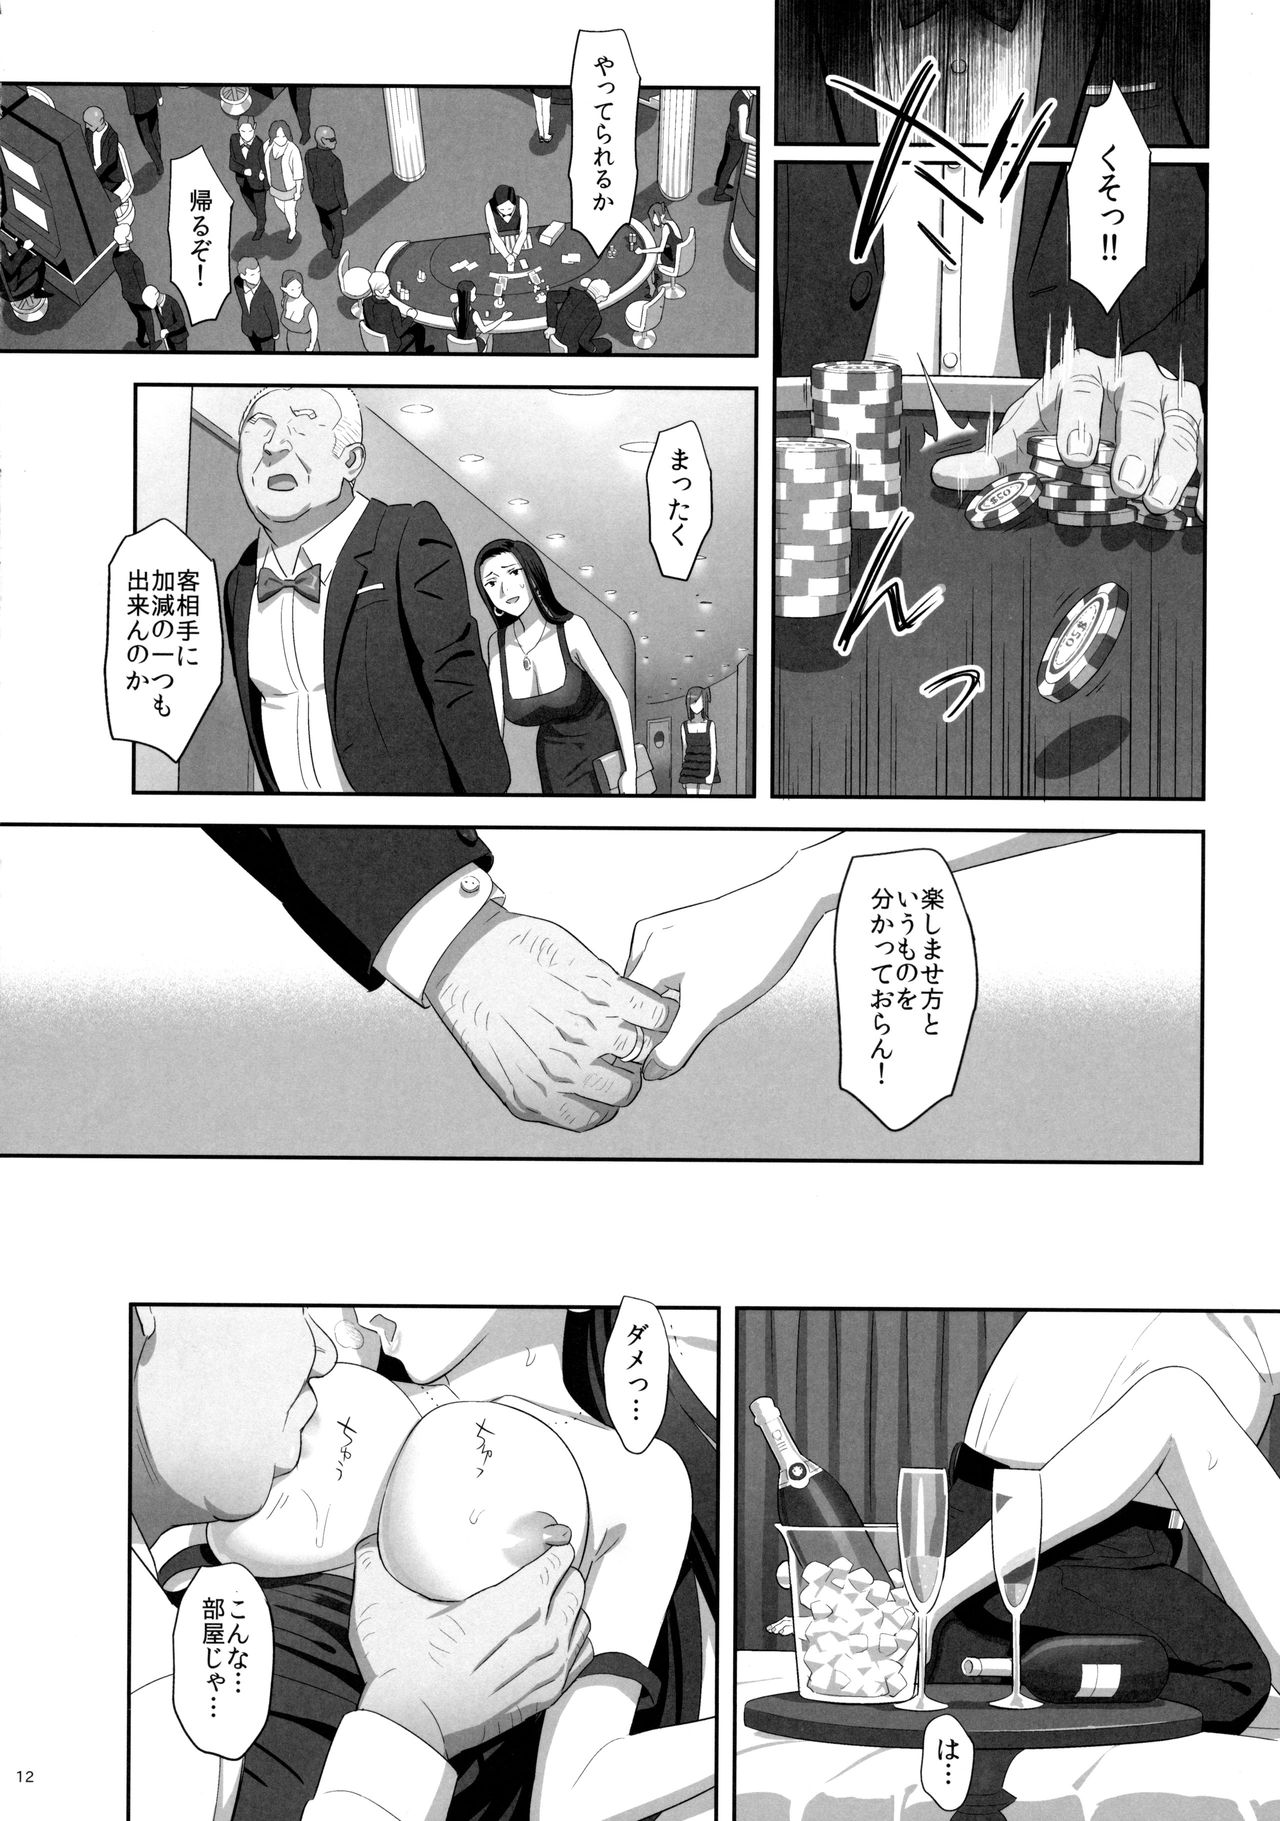 C90) Hito no Fundoshi (Yukiyoshi Mamizu) Kaki Hoshuu 7 page 11 OkHentai.